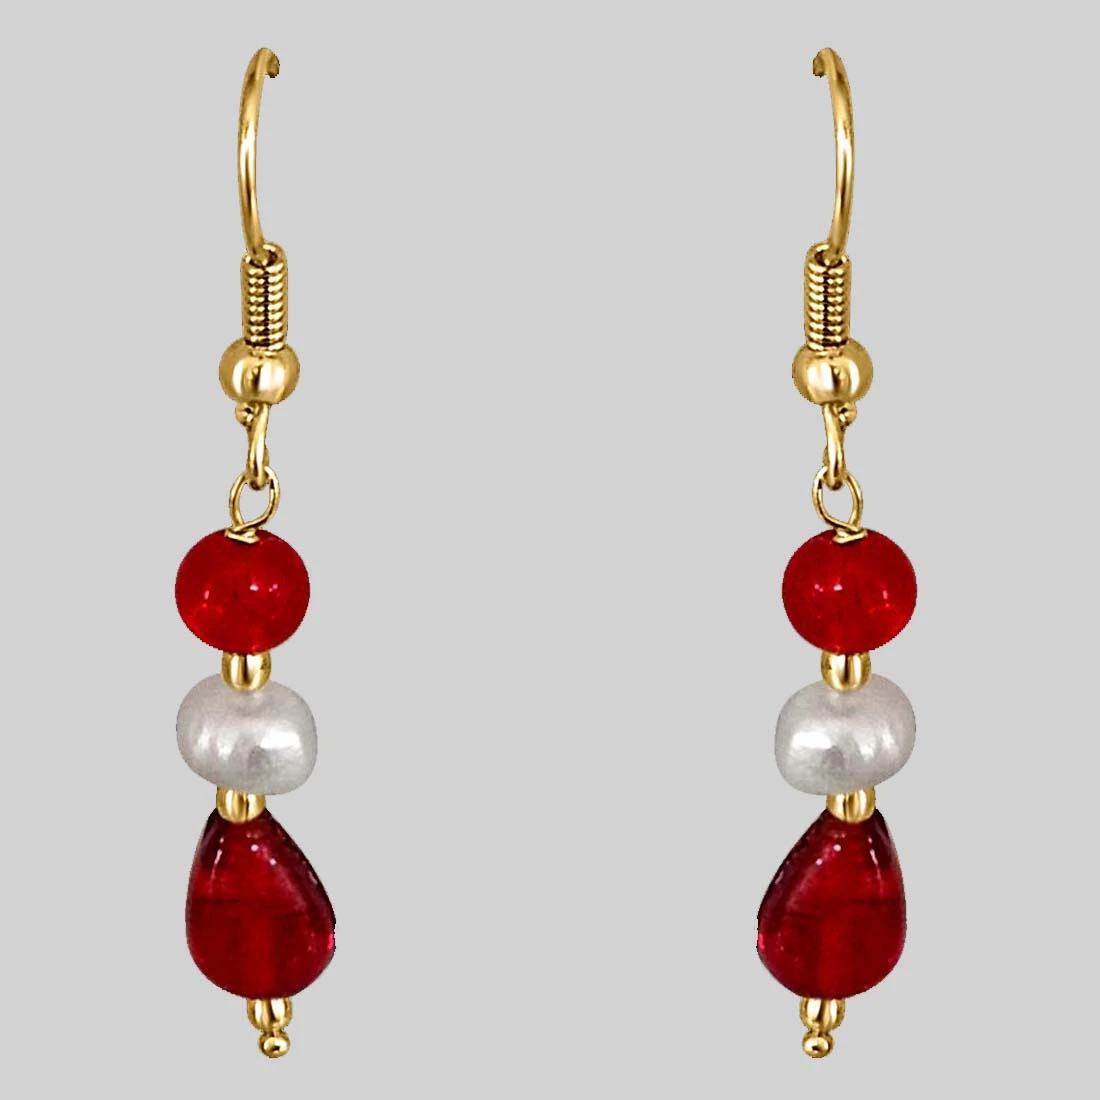 Dangling Pearl & Red Stone Earrings for Women (SE199)